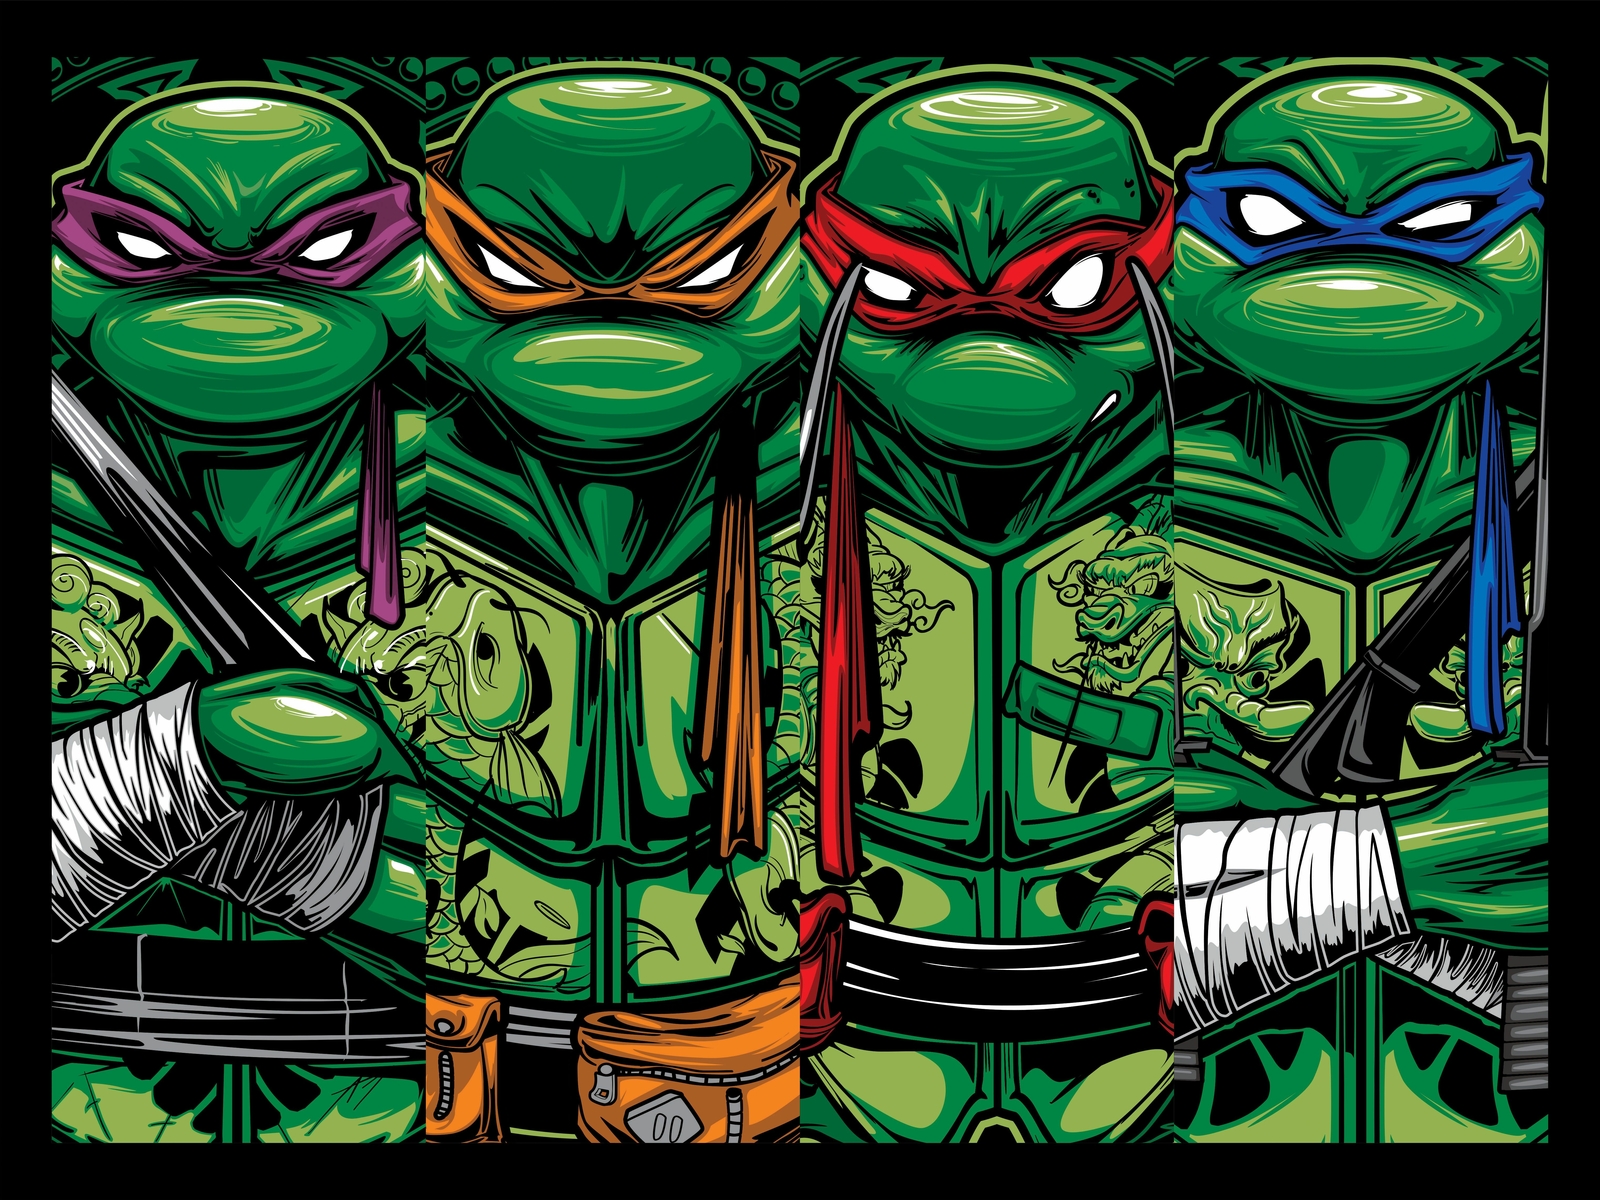 Teenage Mutant Ninja Turtles Cartoon